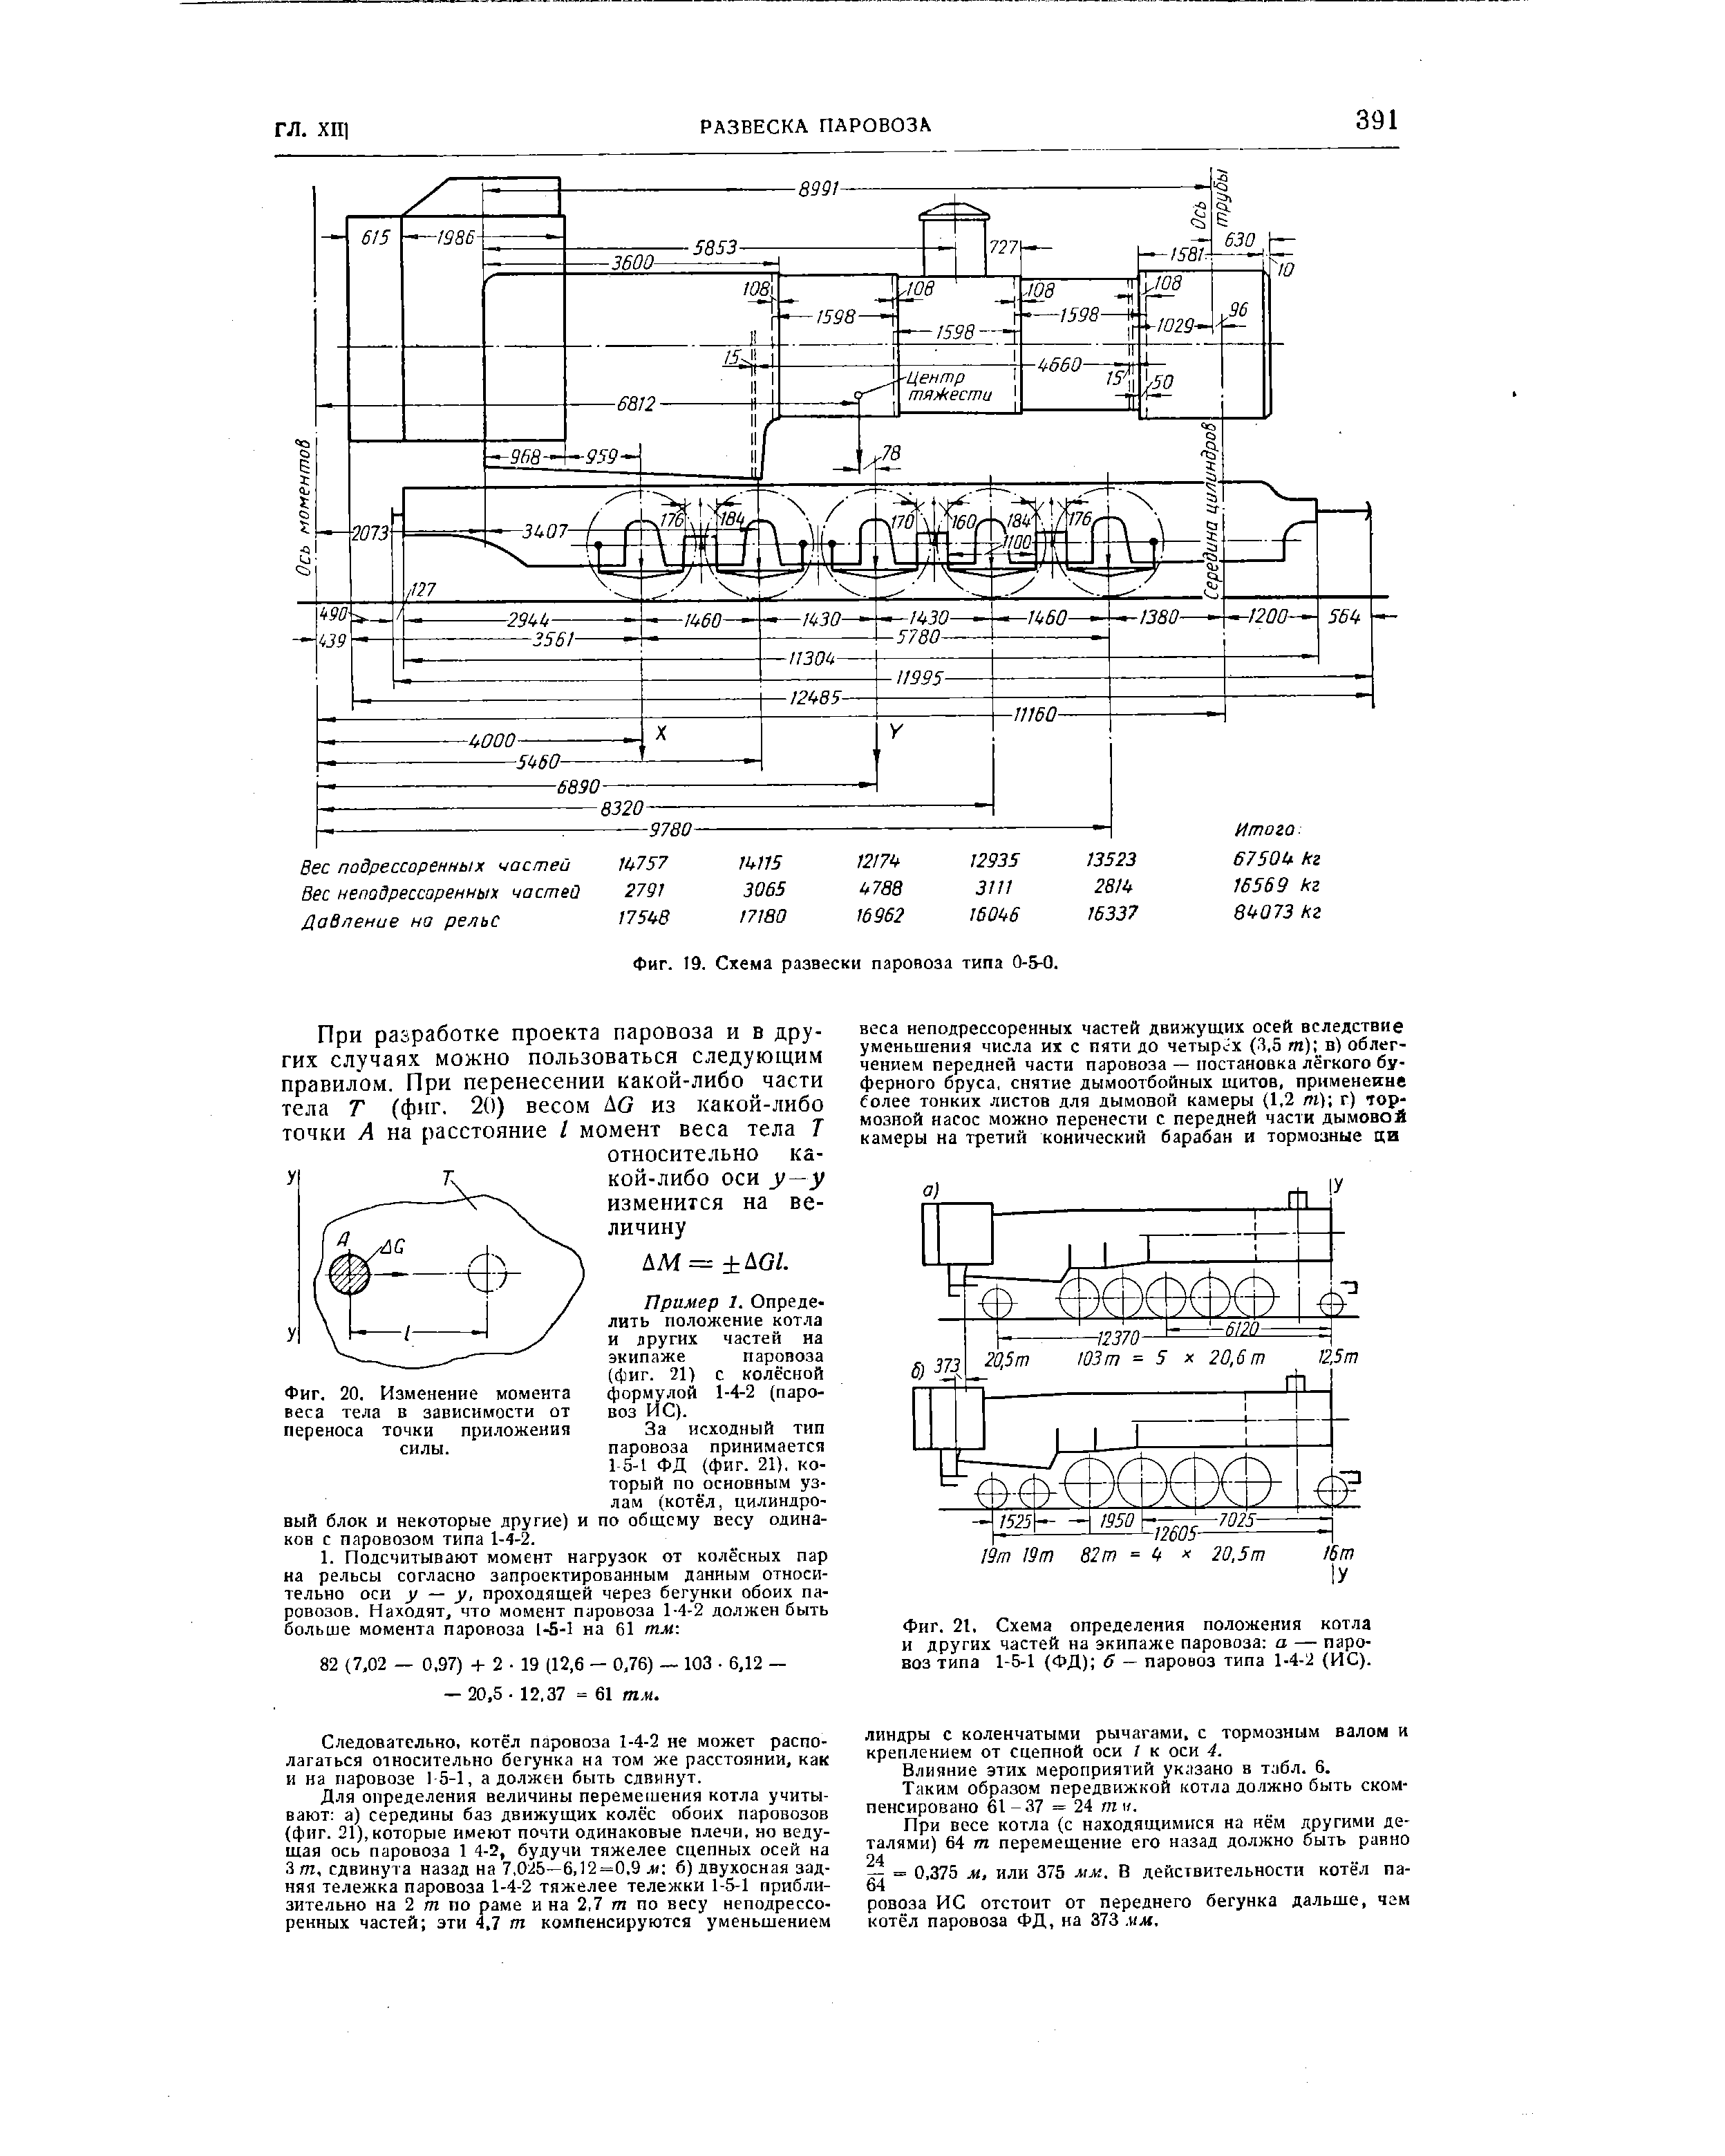 Фиг. 21. <a href="/info/123123">Схема определения</a> положения котла и других частей на экипаже паровоза а — паровоз типа 1-5-1 (ФД) б — паровоз типа 1-4-2 (ИС).
